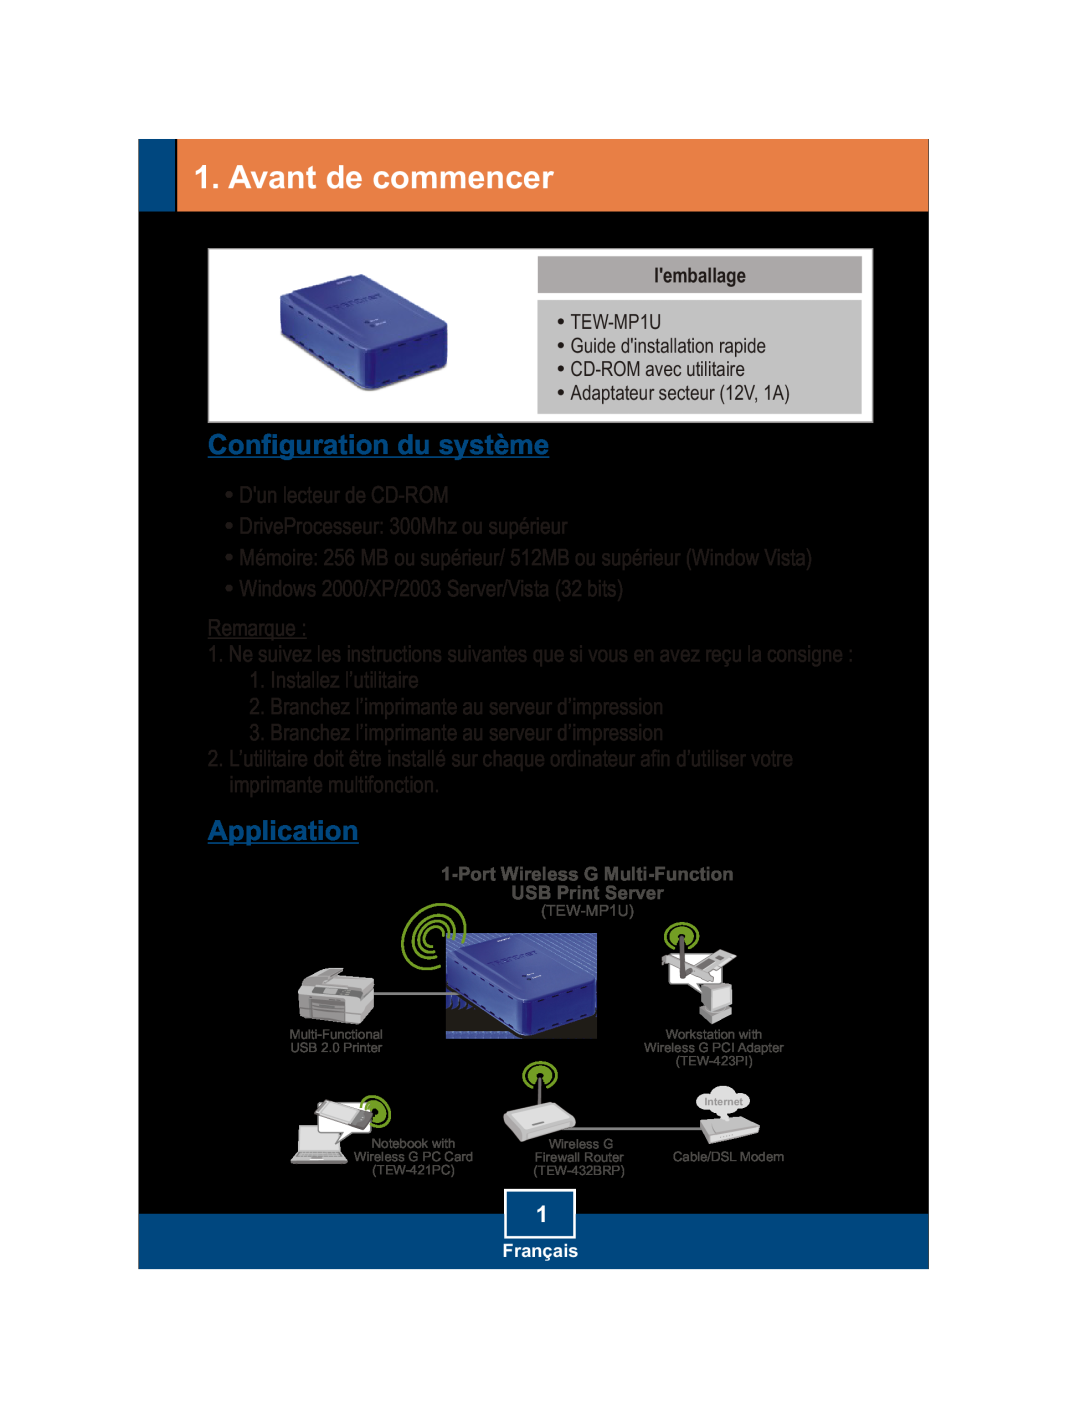 TRENDnet TEW-MP1U manual Avant de commencer, Configuration du système, Application 